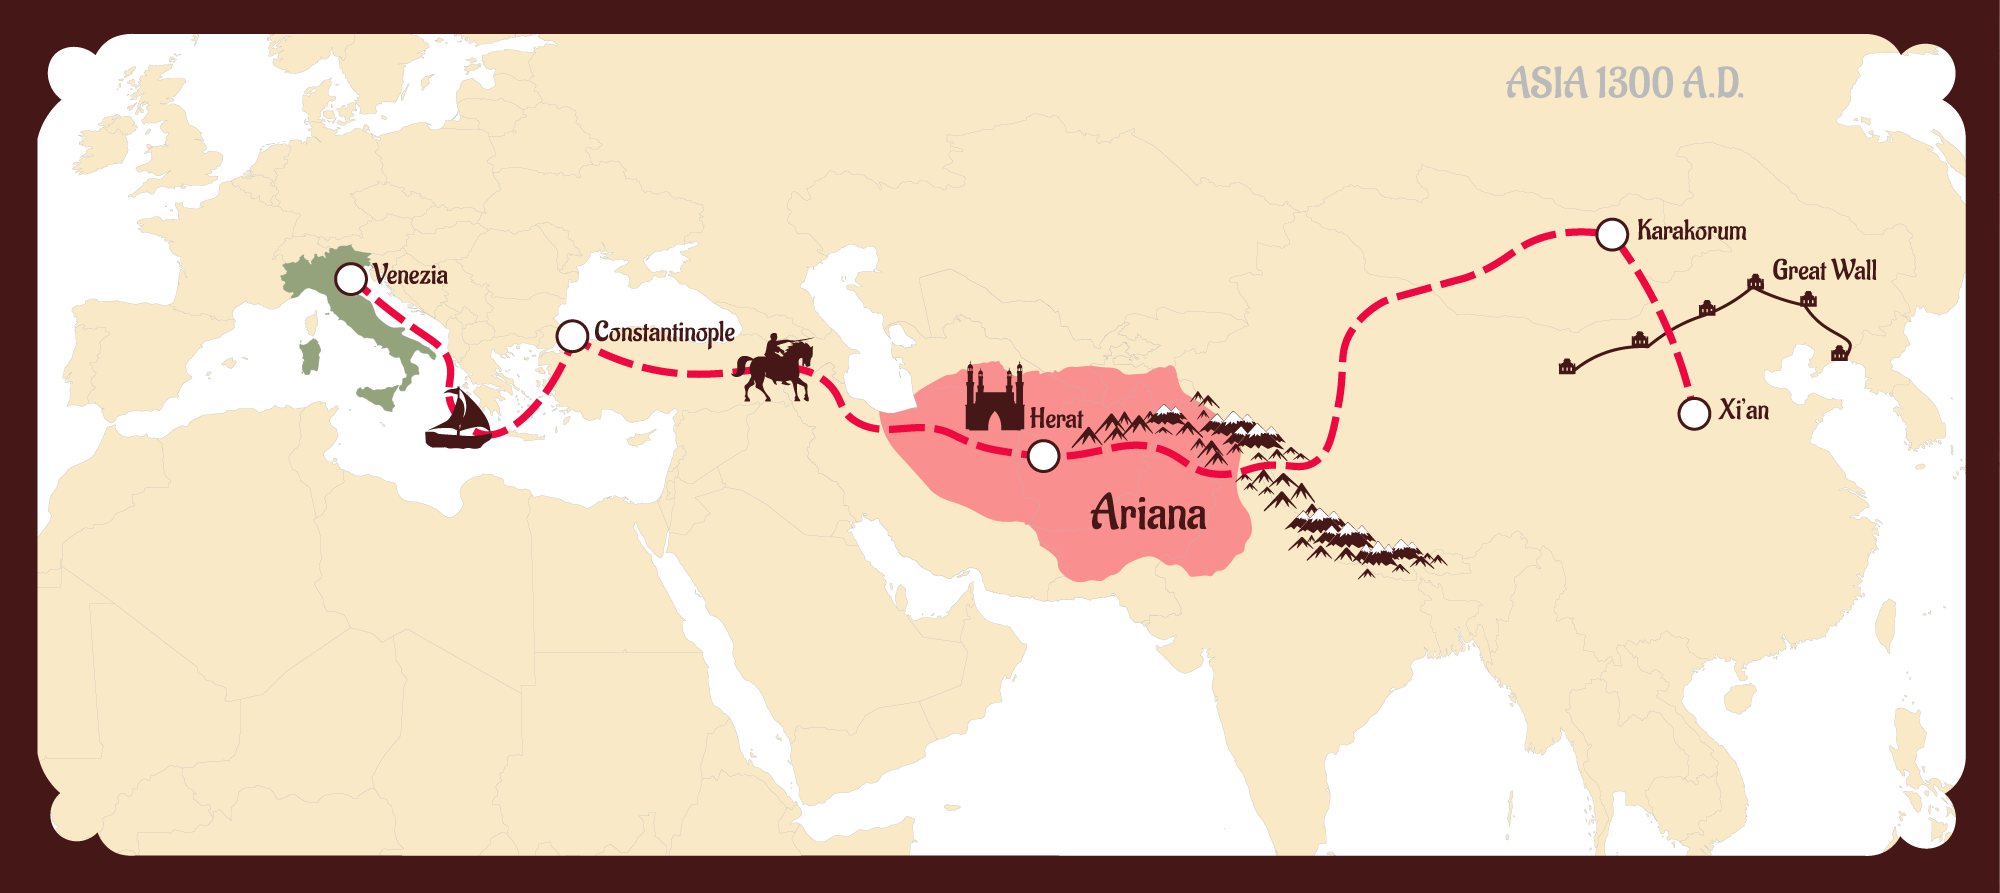 Шелковый путь связывает китай. Великий шелковый путь Крым. Великий шелковый путь 14 век.